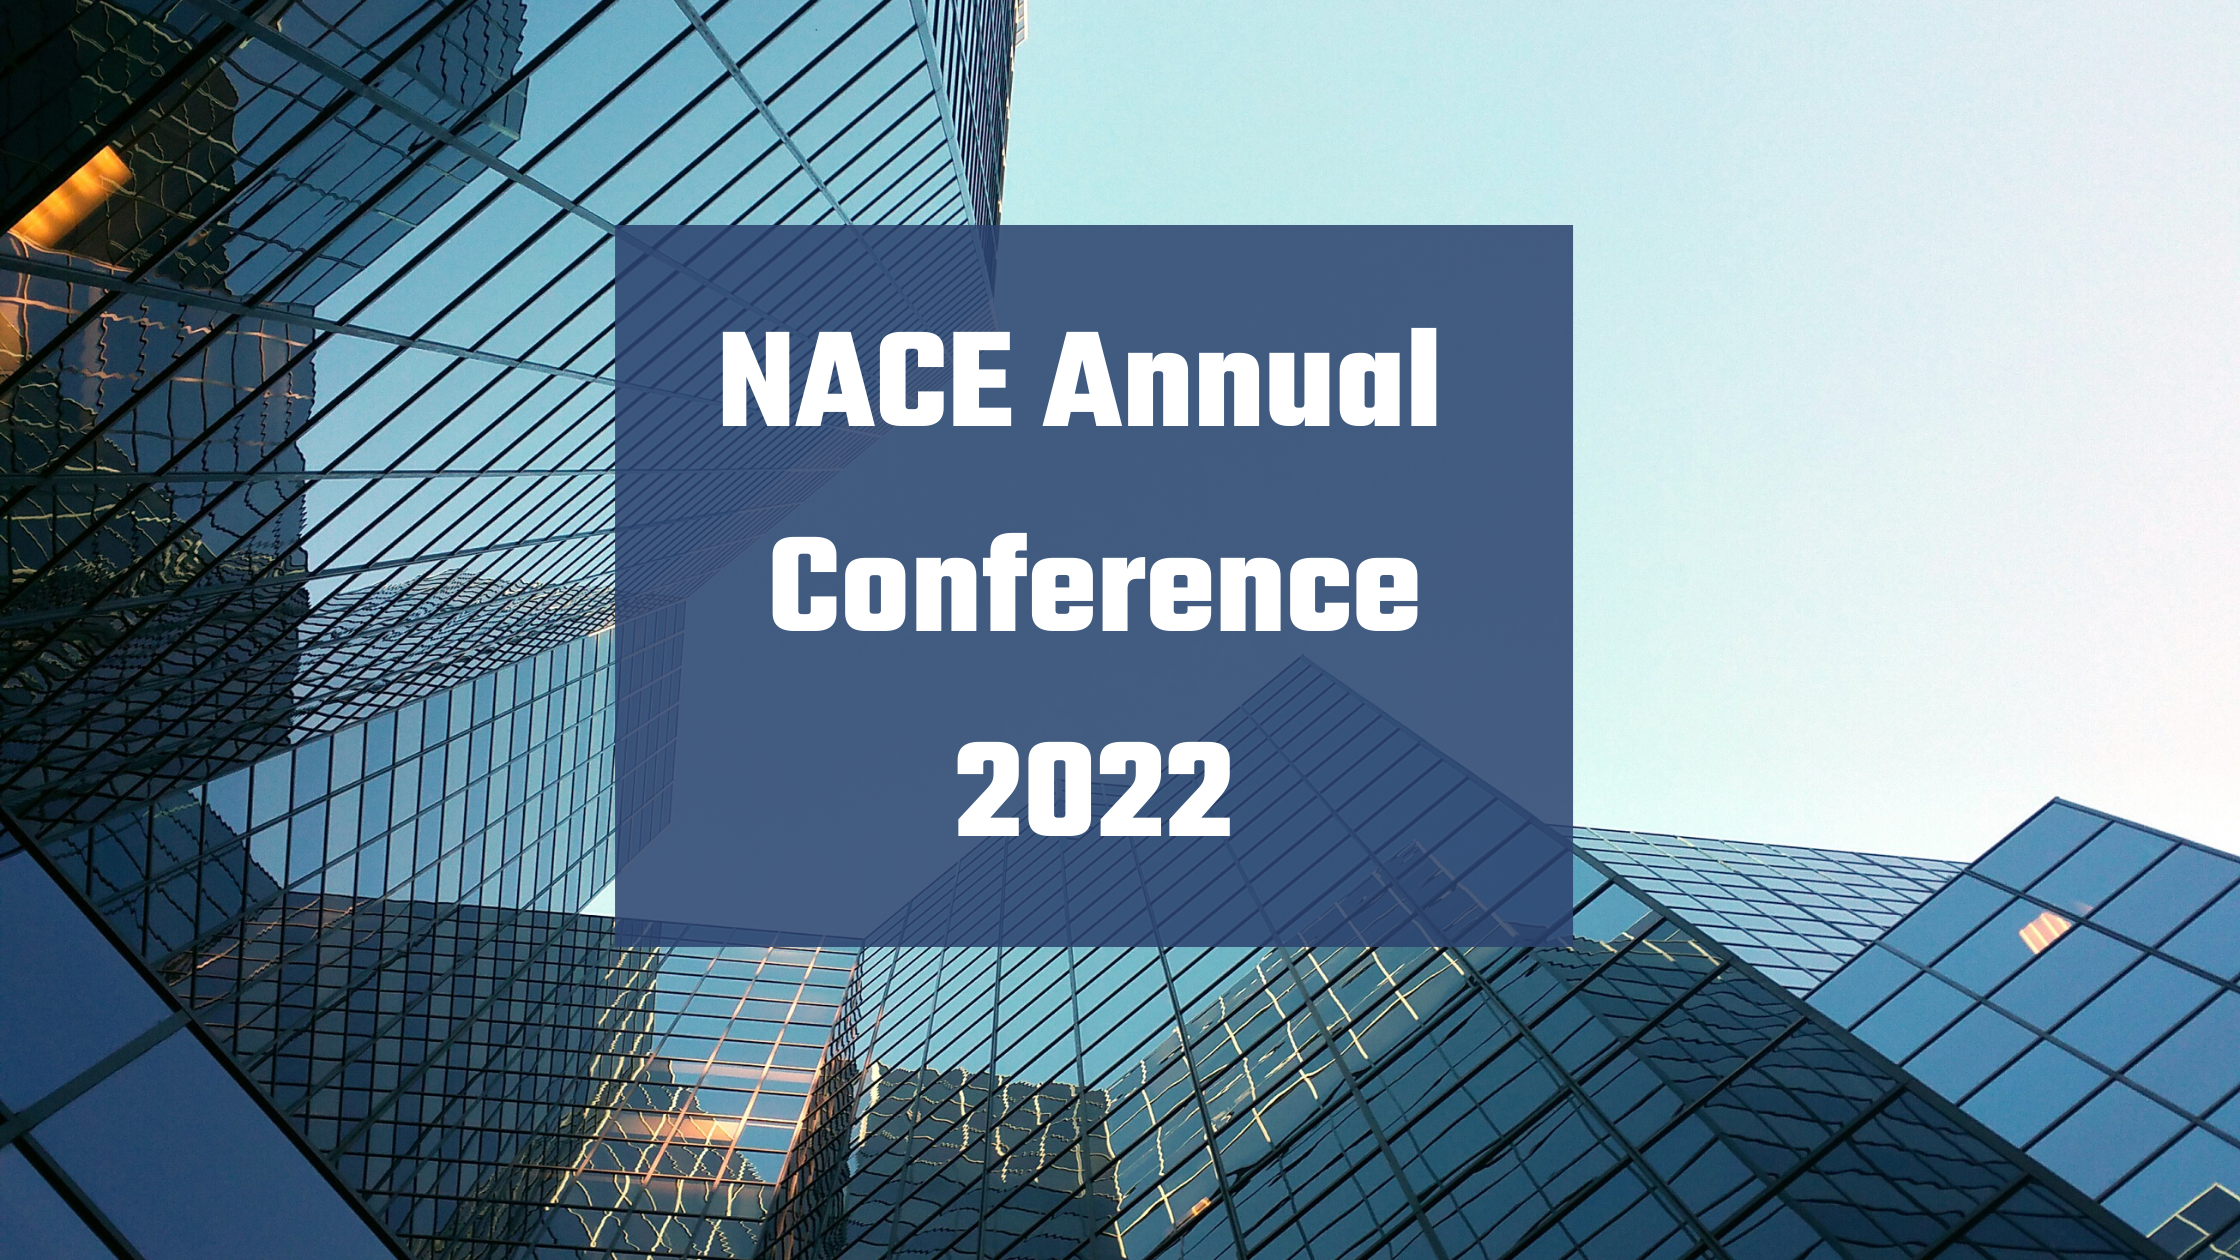 NACE Conference 2022